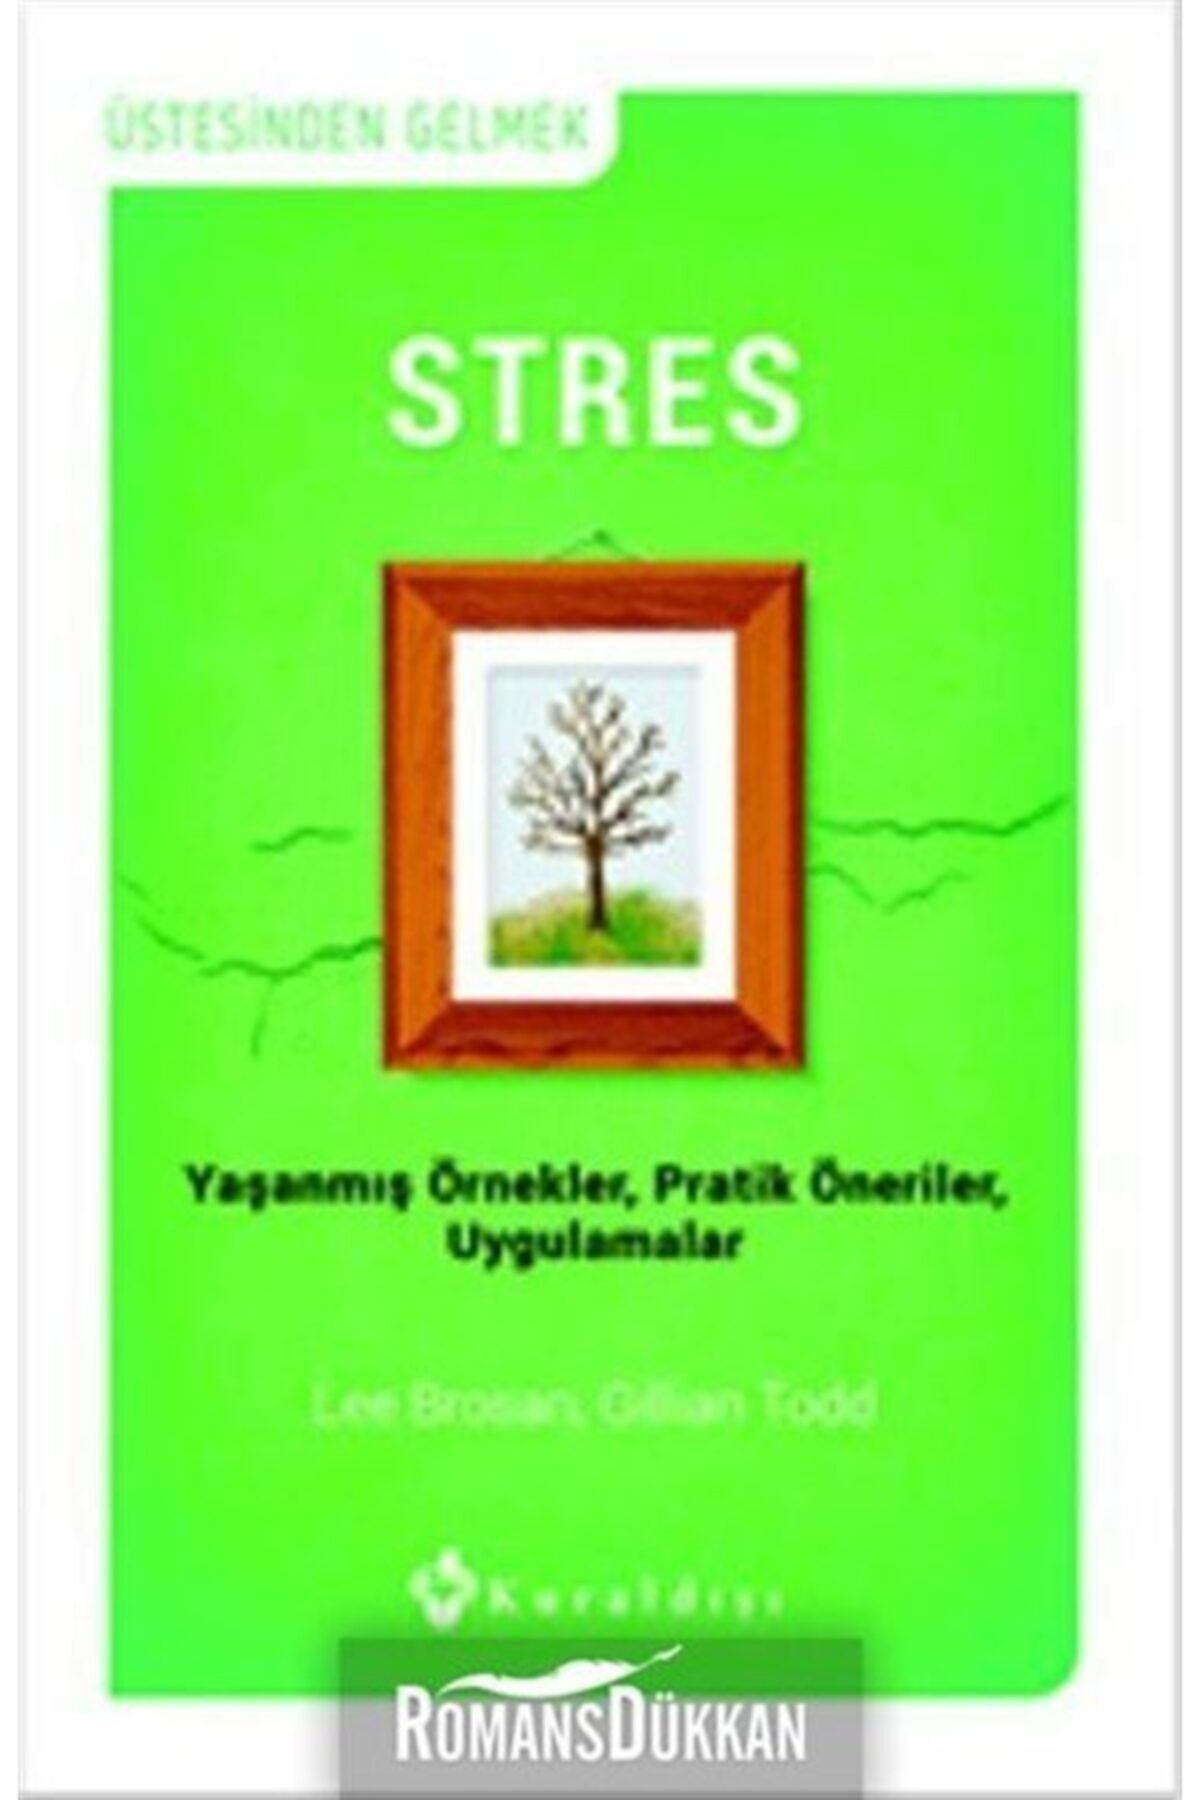 Kuraldışı Yayınları Stres & Yaşanmış Örnekler, Pratik Öneriler, Uygulamalar